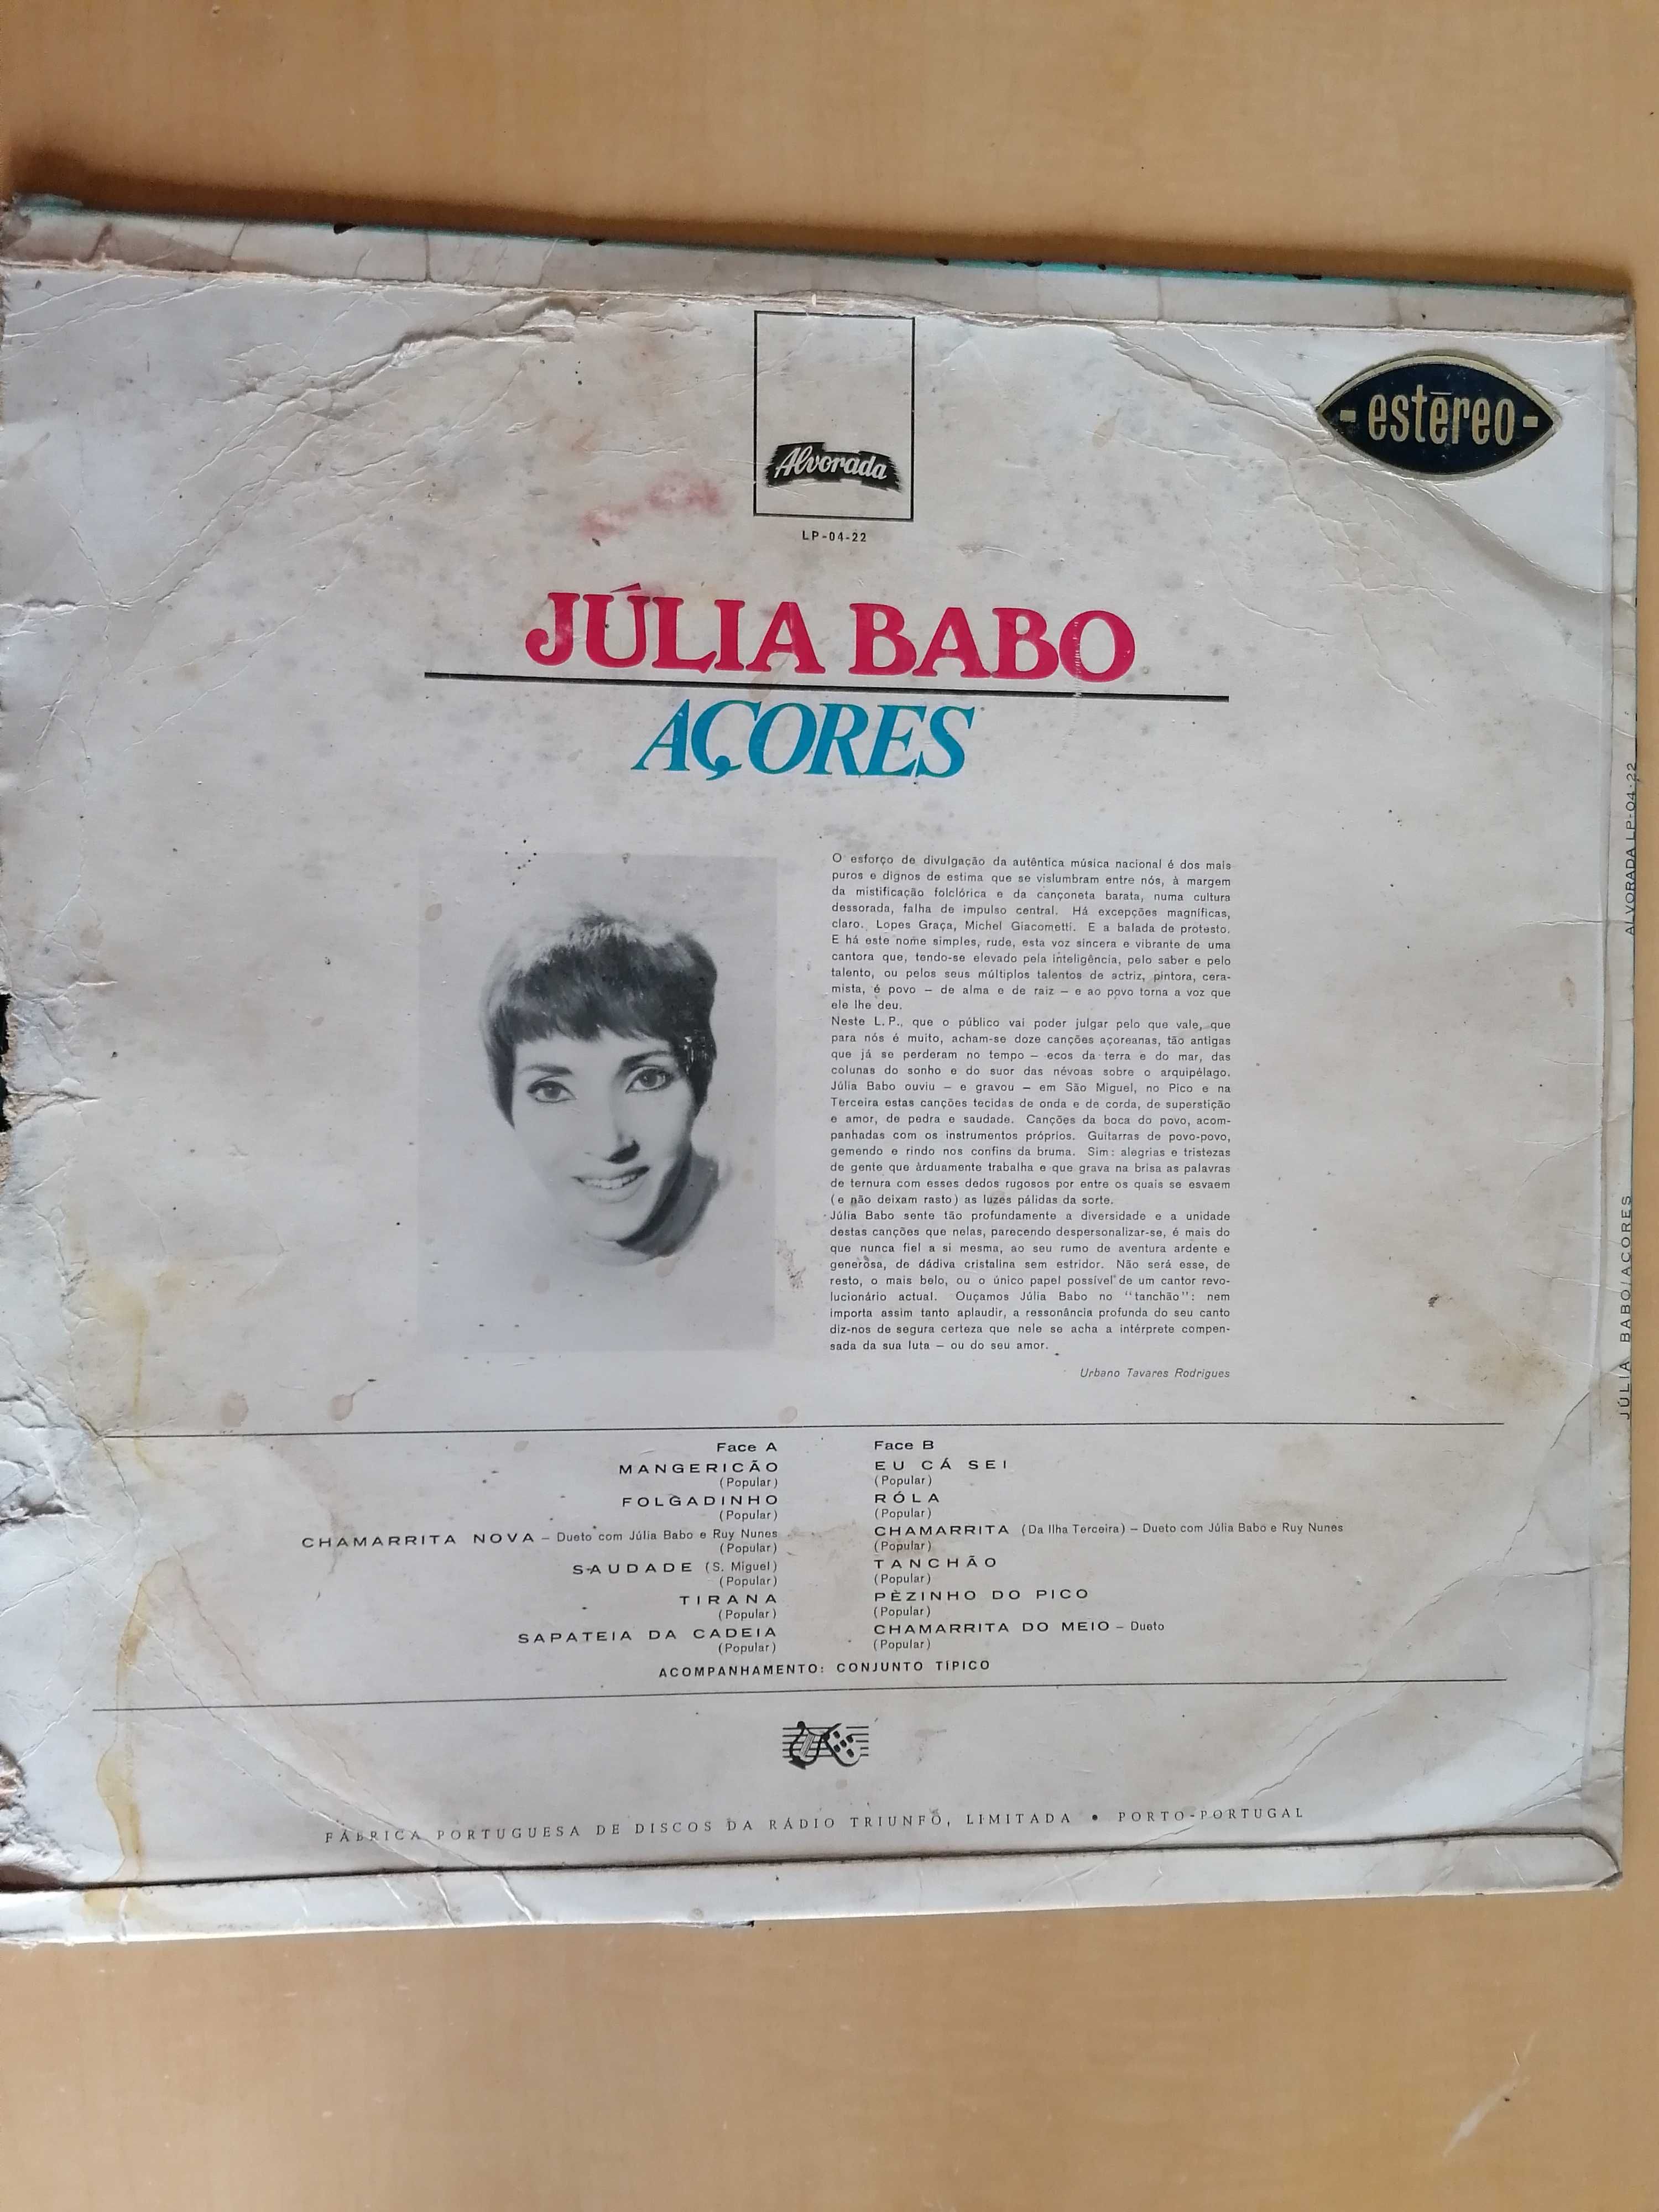 Disco "músicas dos Açores" por julia Babo